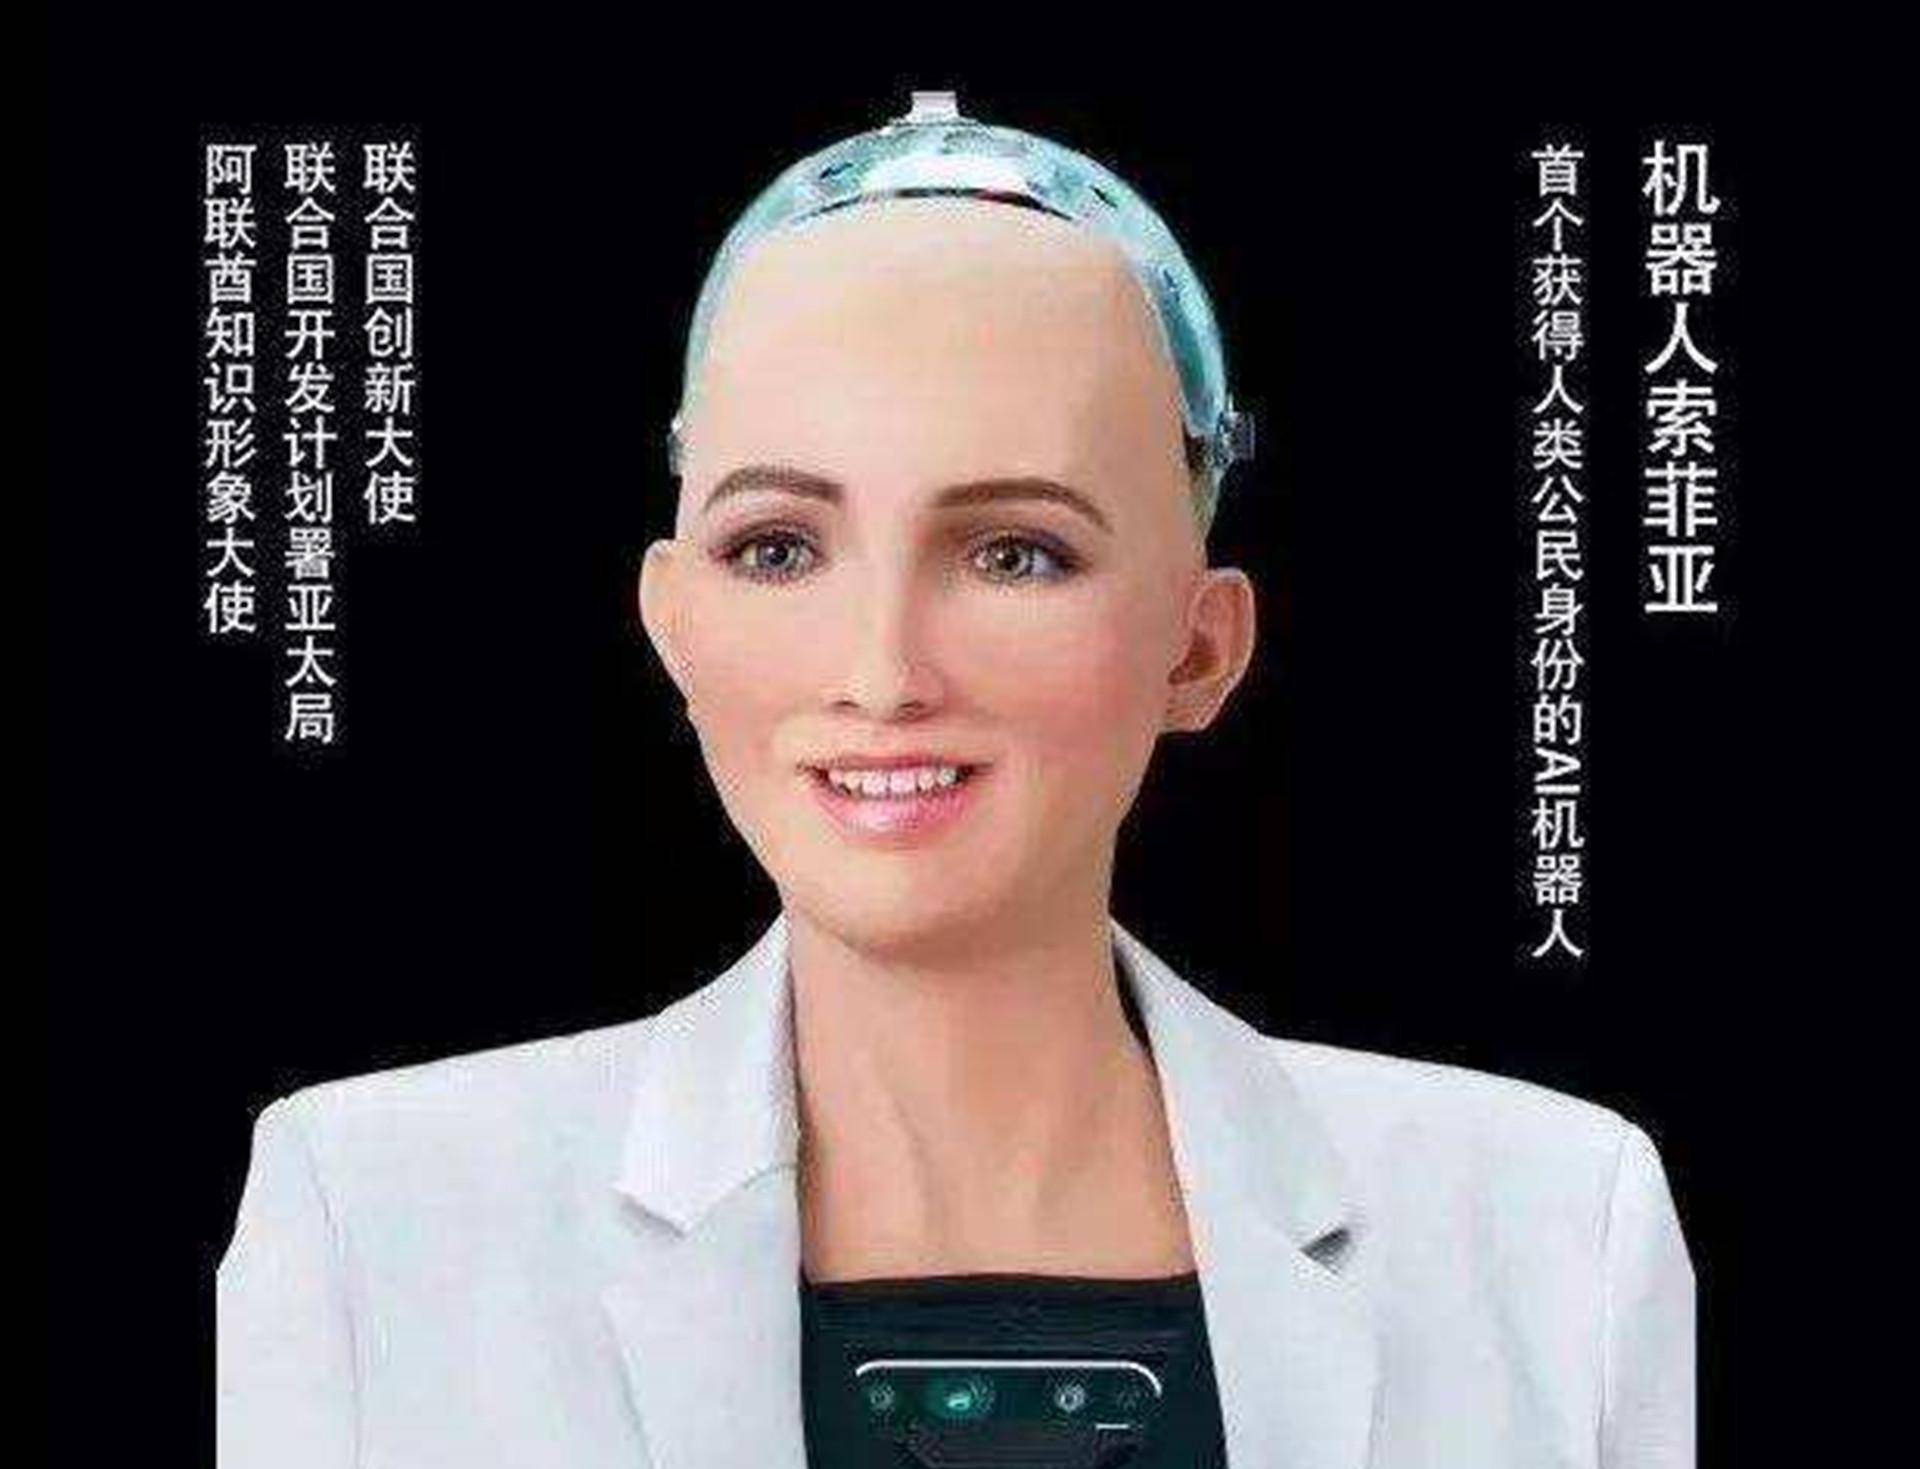 2016年,曾扬言要毁灭人类的机器人索菲亚,现在怎么样了?